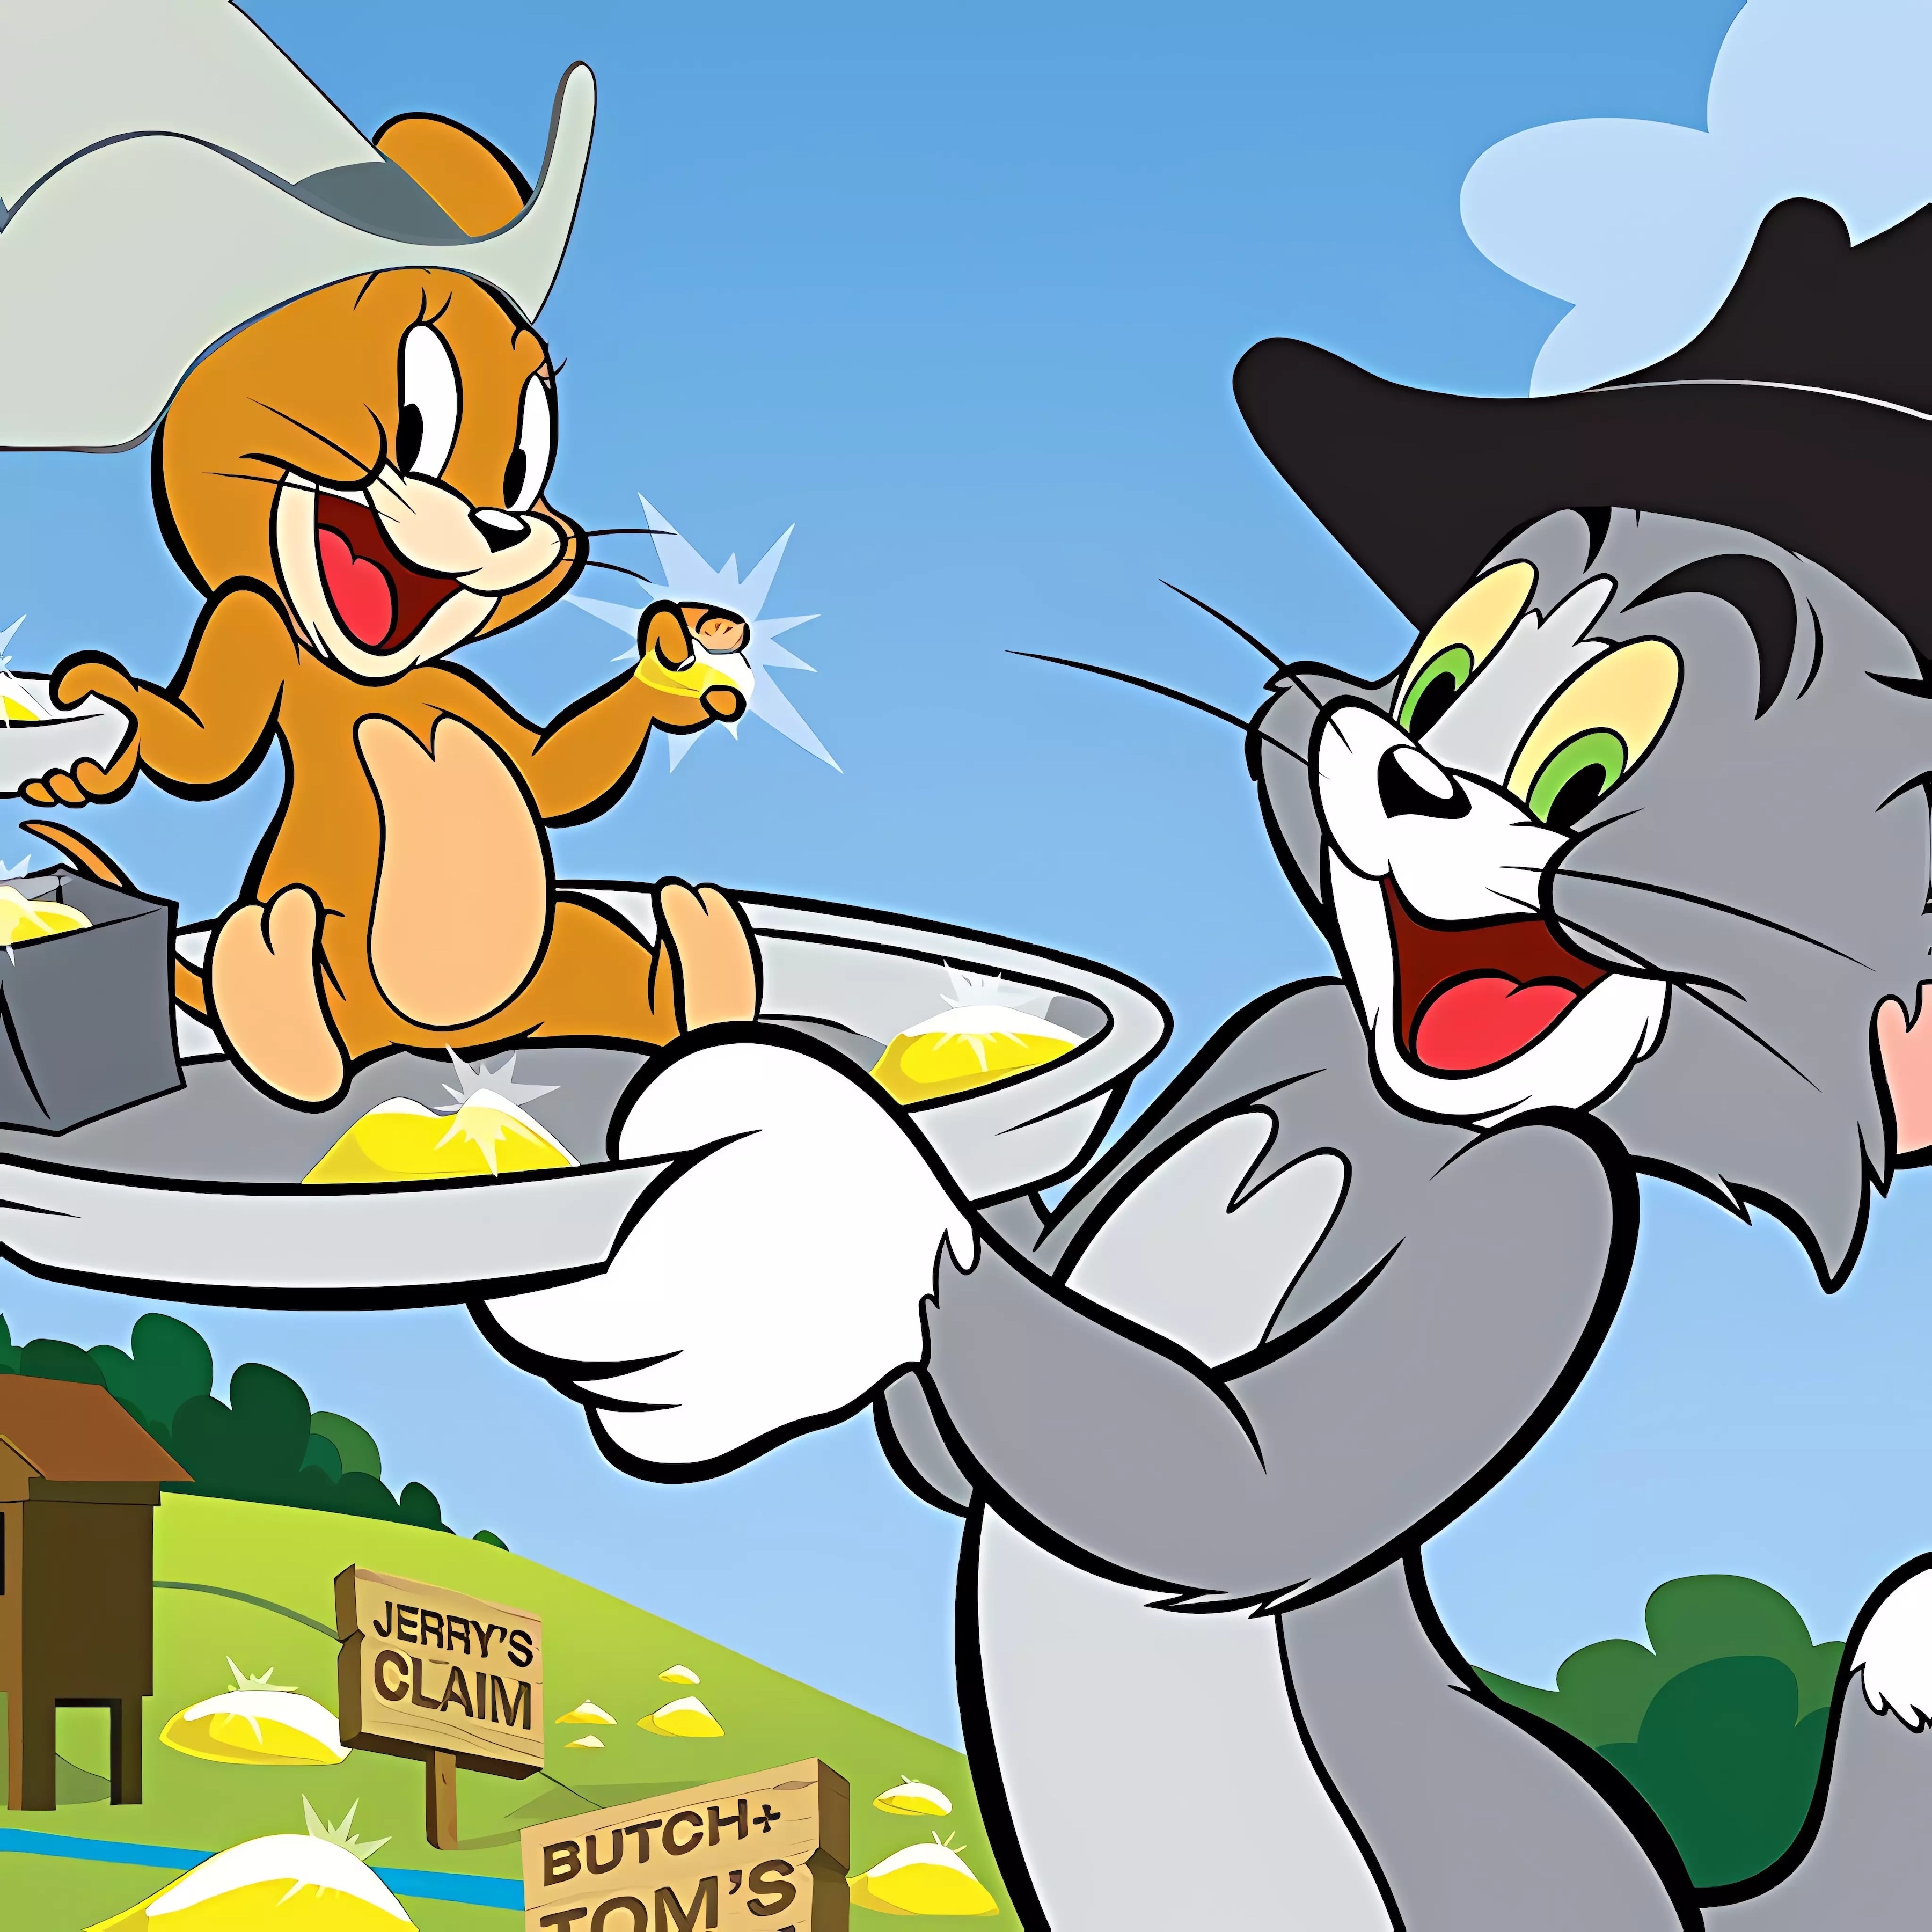 Дядя тома и джерри. Tom and Jerry. Tom and Jerry cartoon. Tom and Jerry 2021.